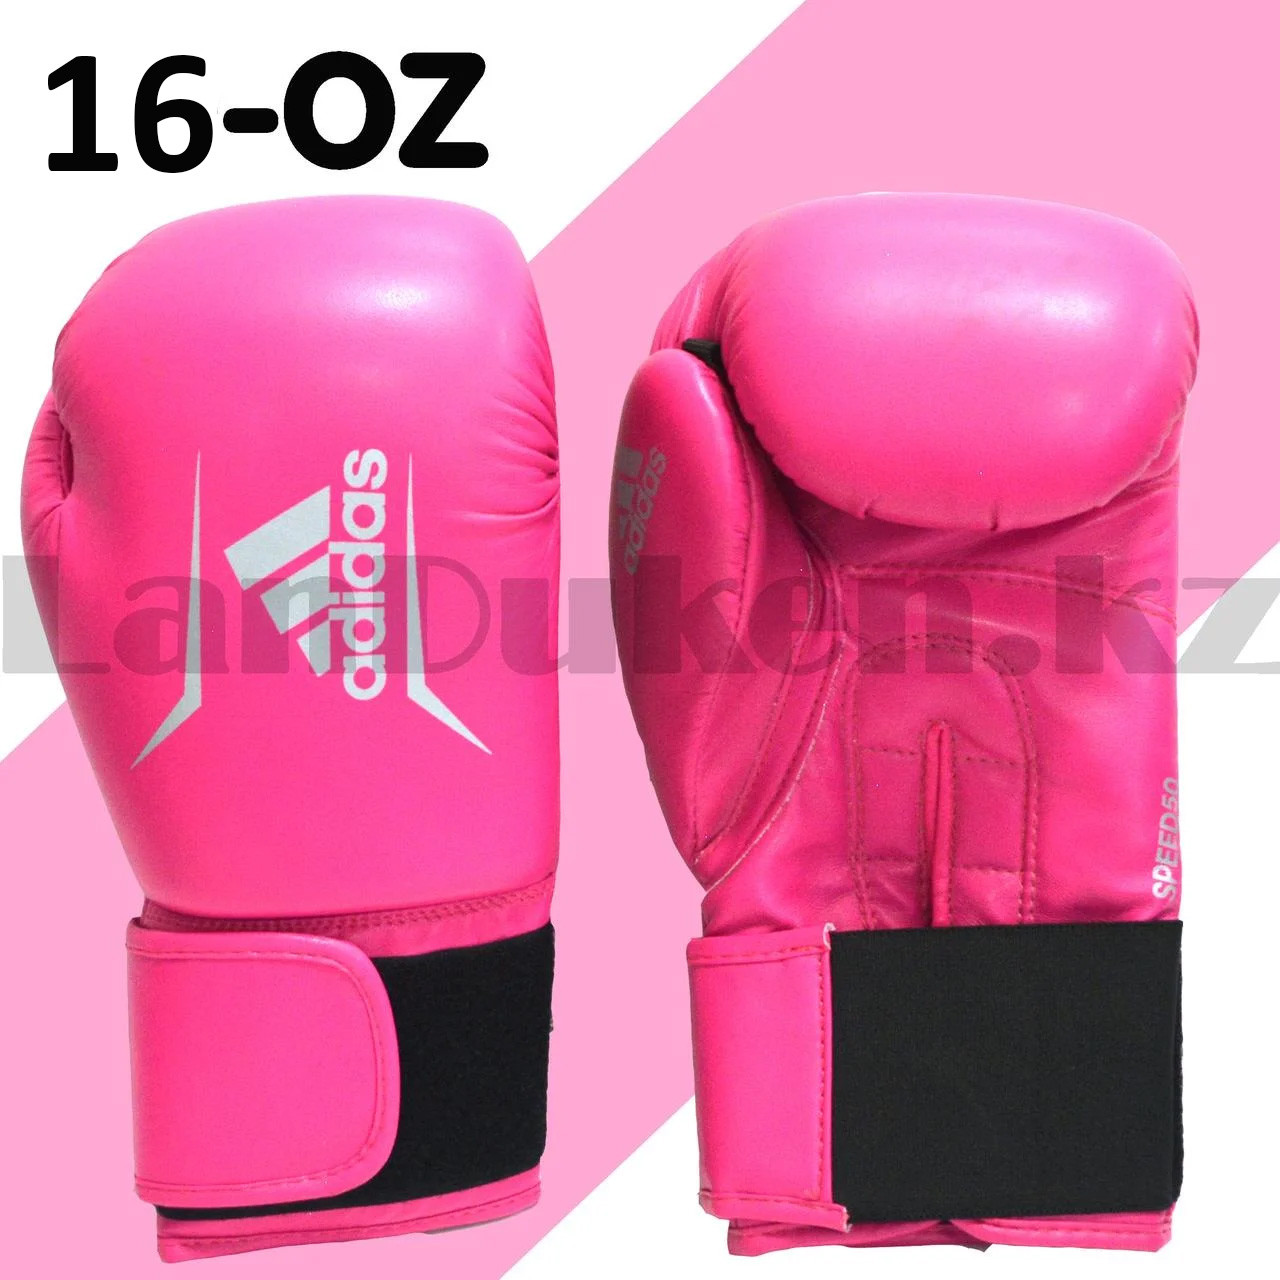 Боксерские перчатки 16-OZ розовые с серебристым принтом